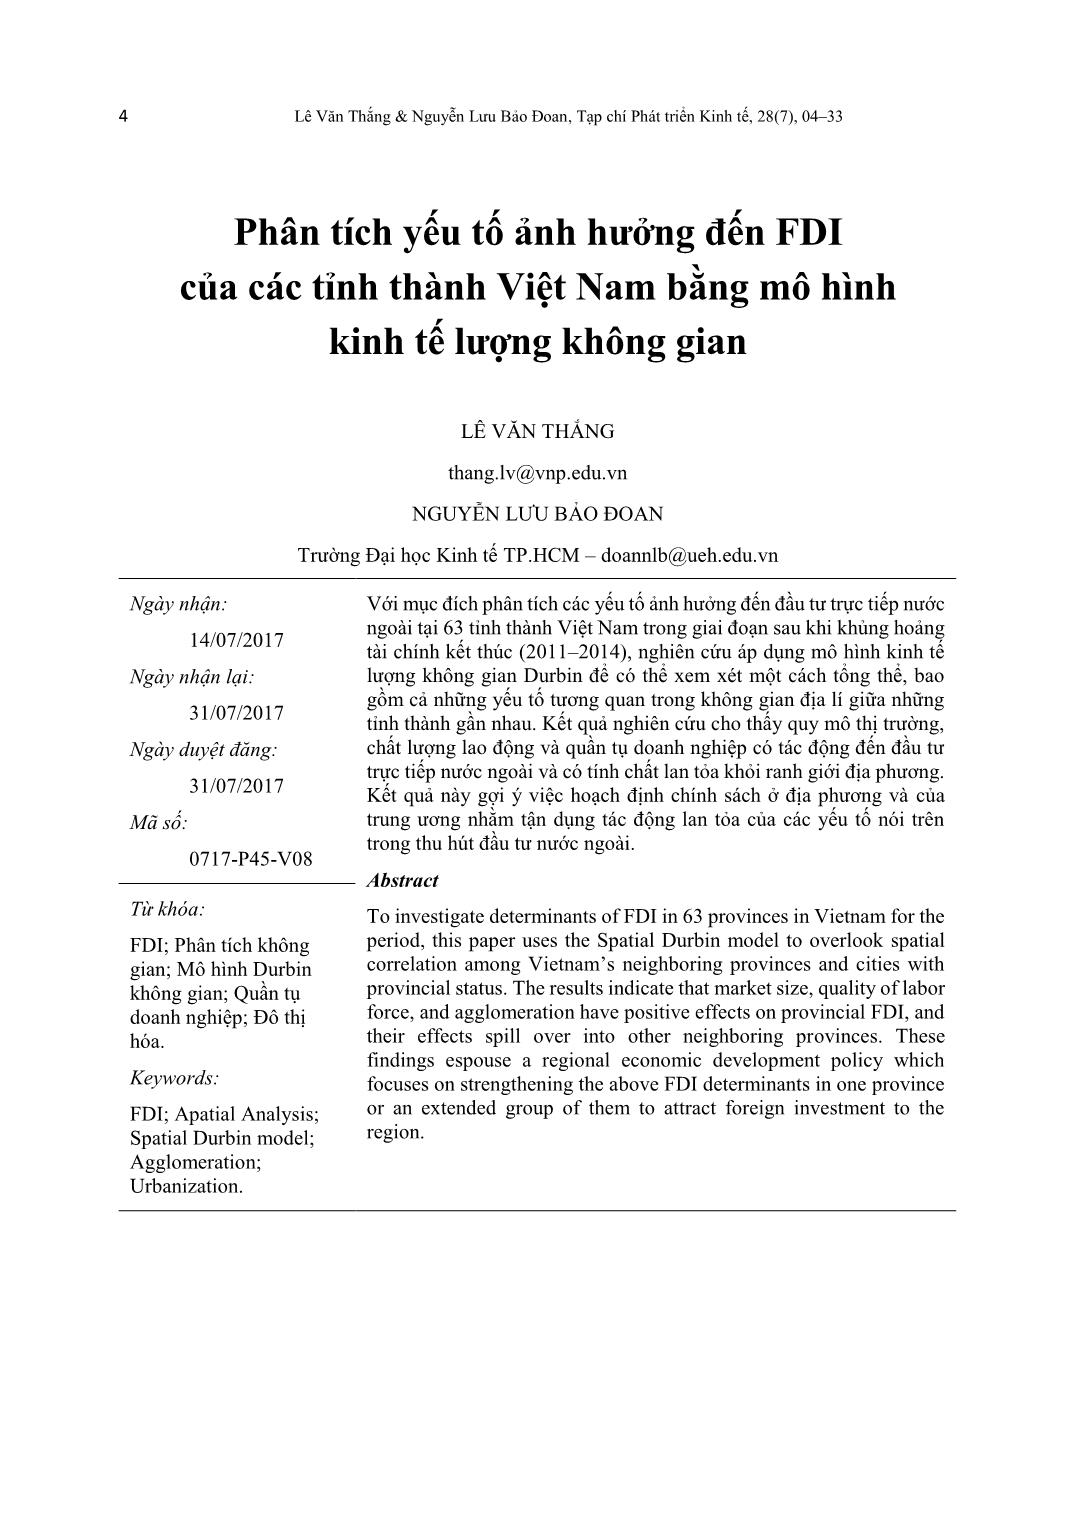 Phân tích yếu tố ảnh hưởng đến FDI của các tỉnh thành Việt Nam bằng mô hình kinh tế lượng không gian trang 1